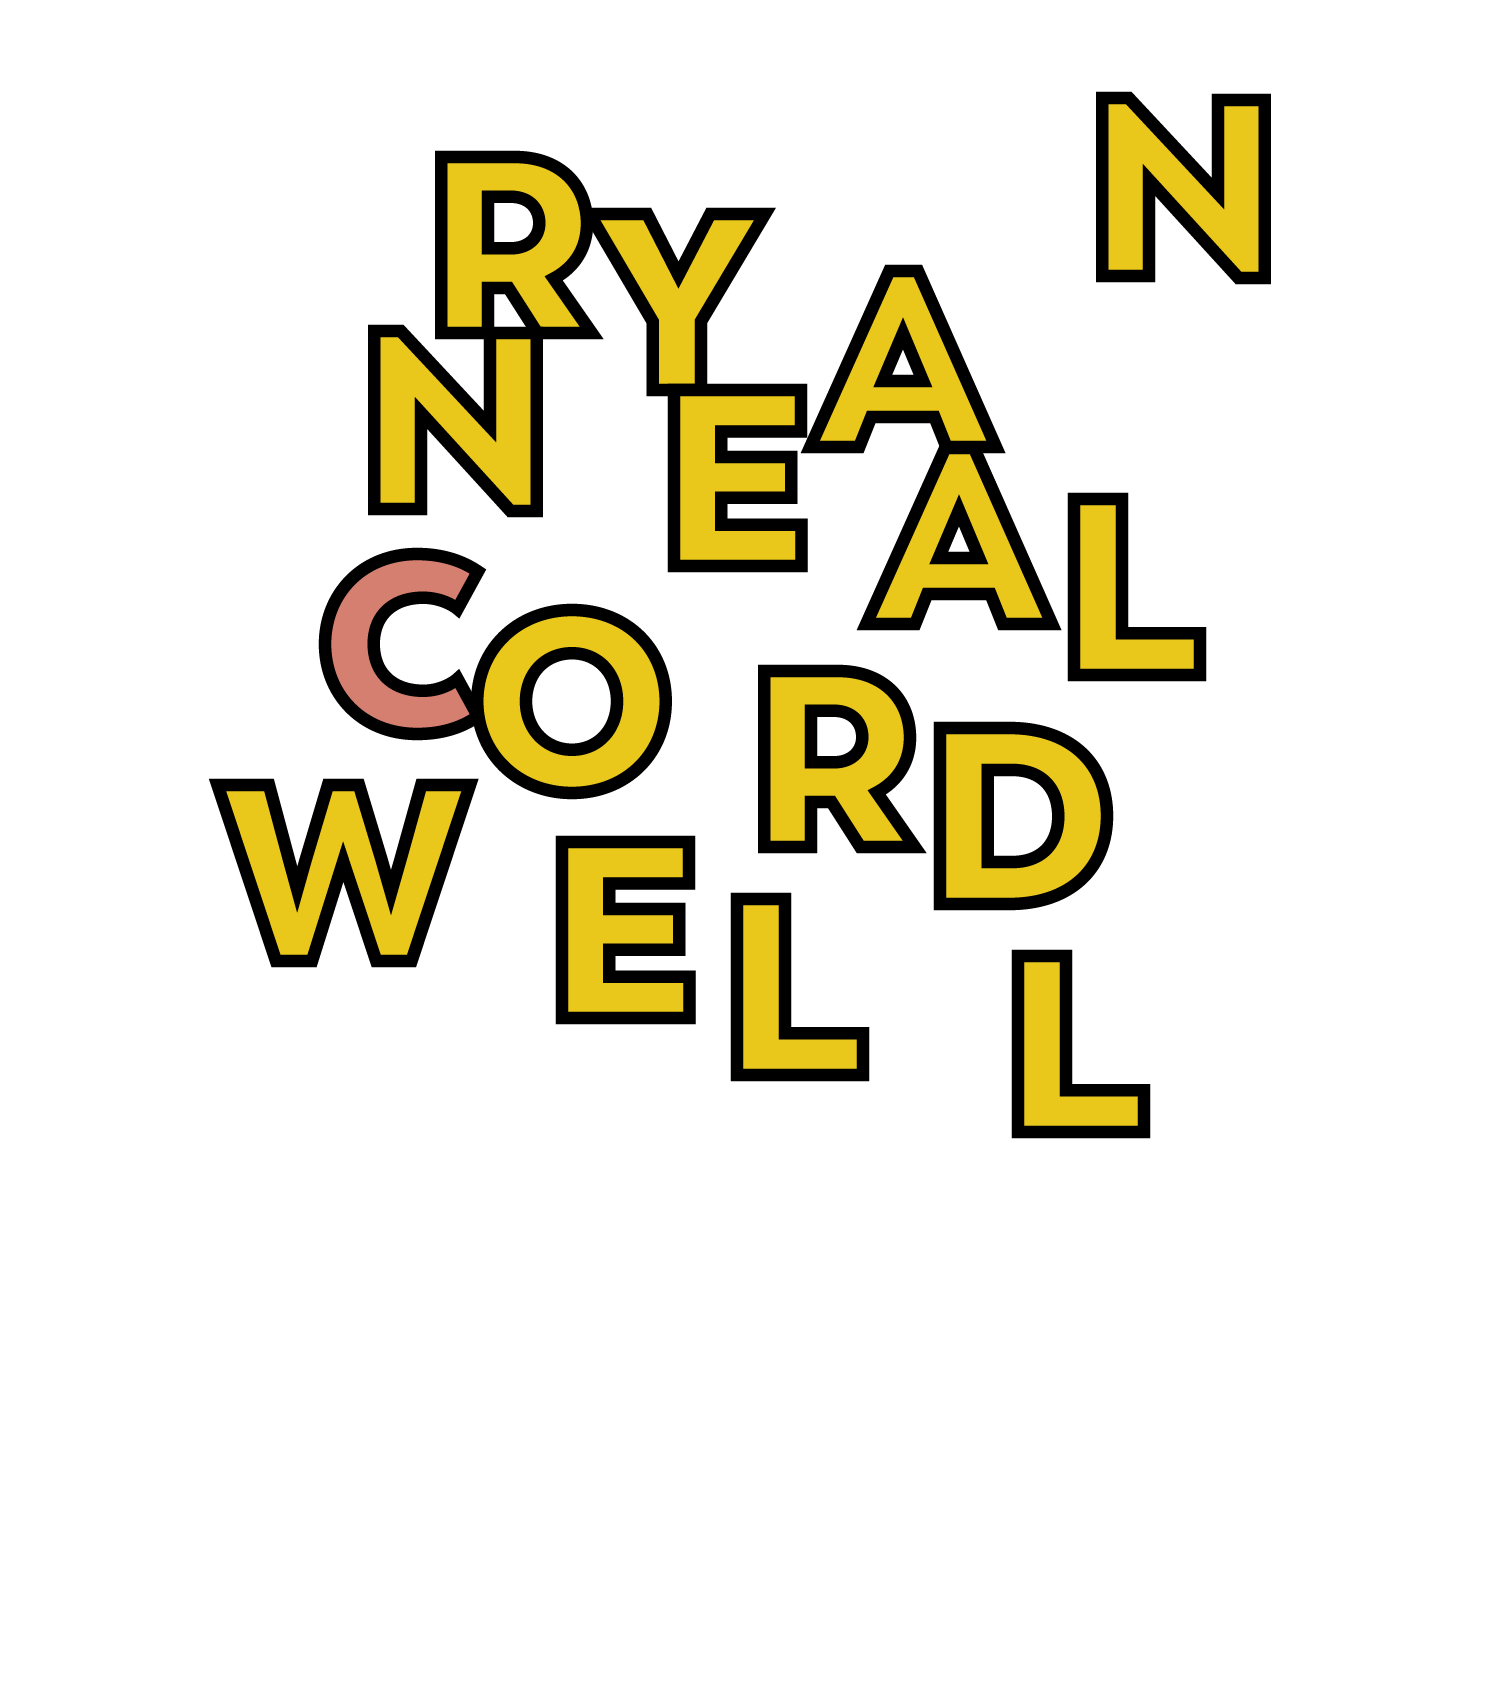 Ryan Neal Cordwell